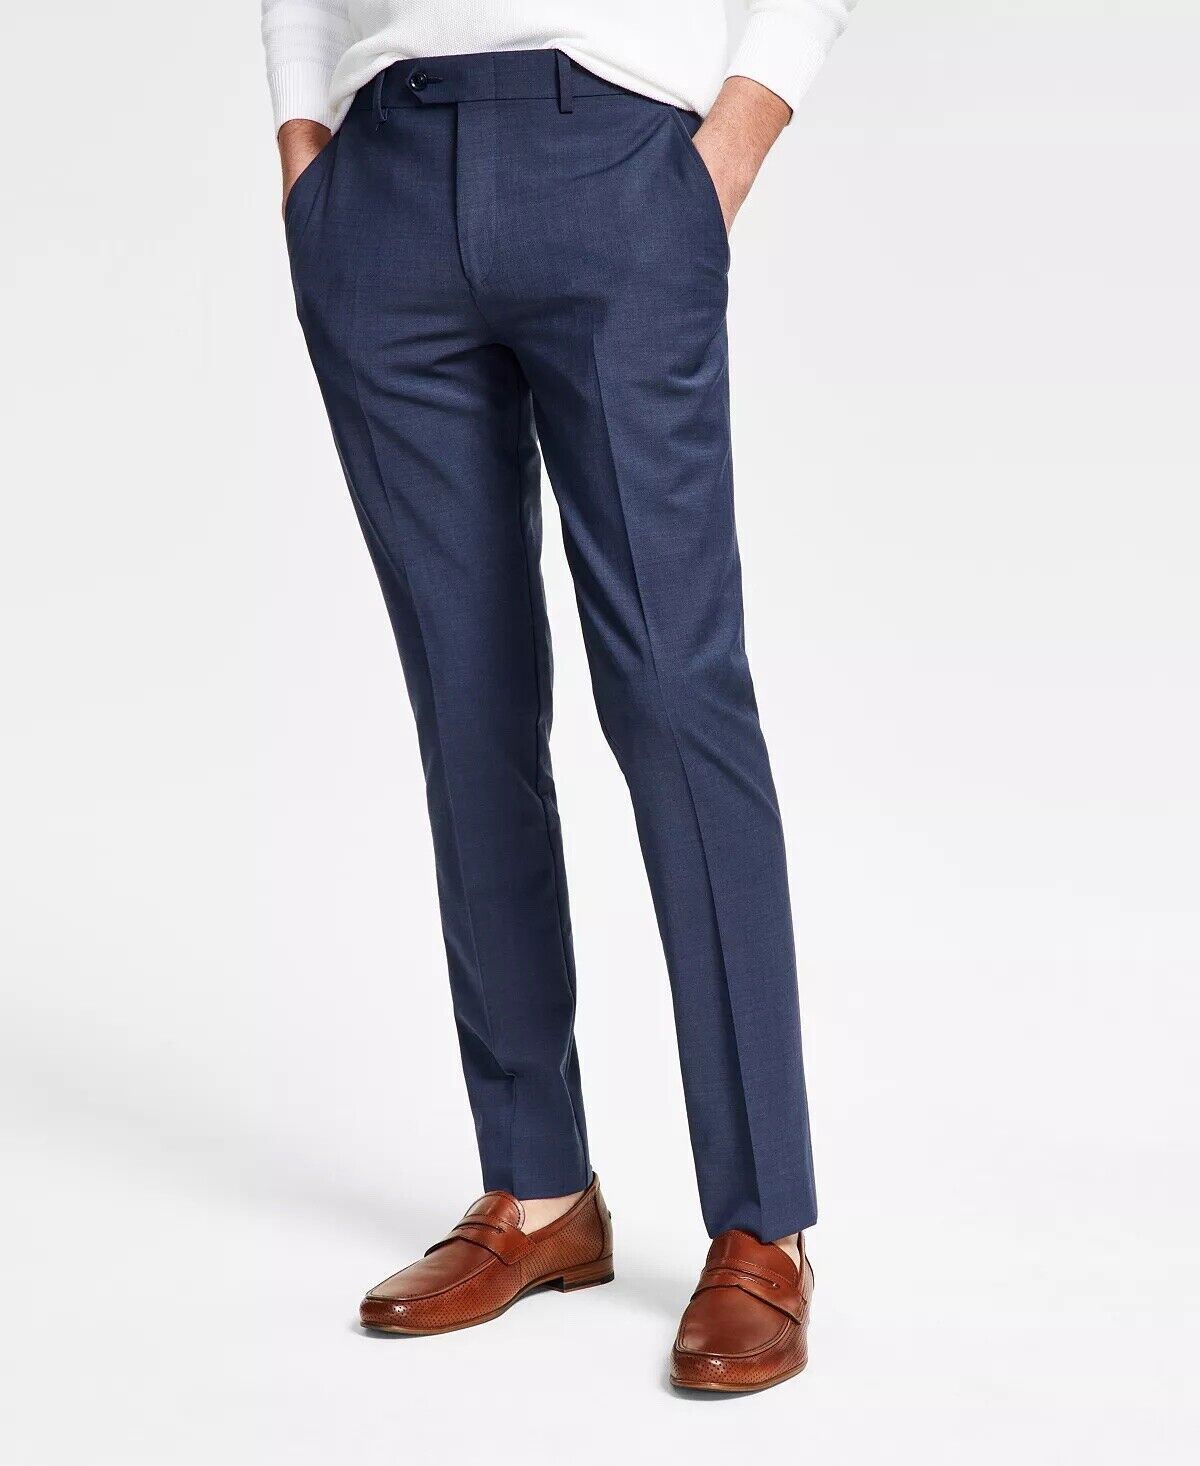 Bar Iii Men's Slim-Fit Solid Suit Dress Pants Blue 32 x 34 Flat Front Pant